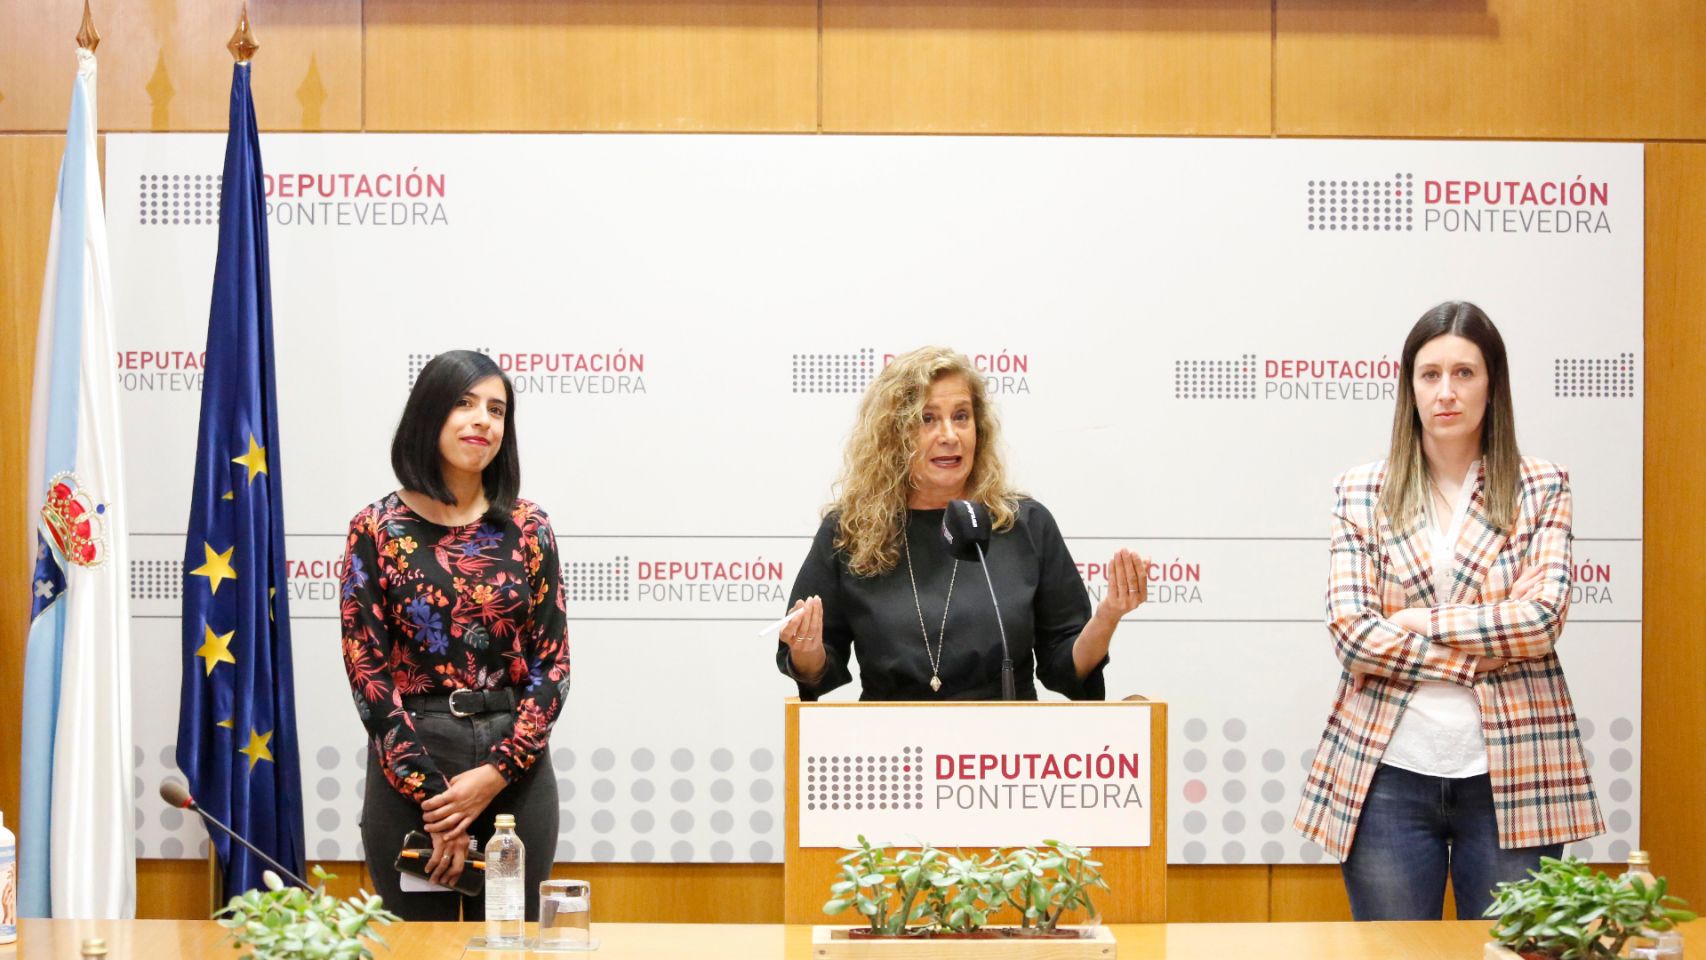 Priscila Retamozo, Carmela Silva y Elena Cobo en la presentación del evento.